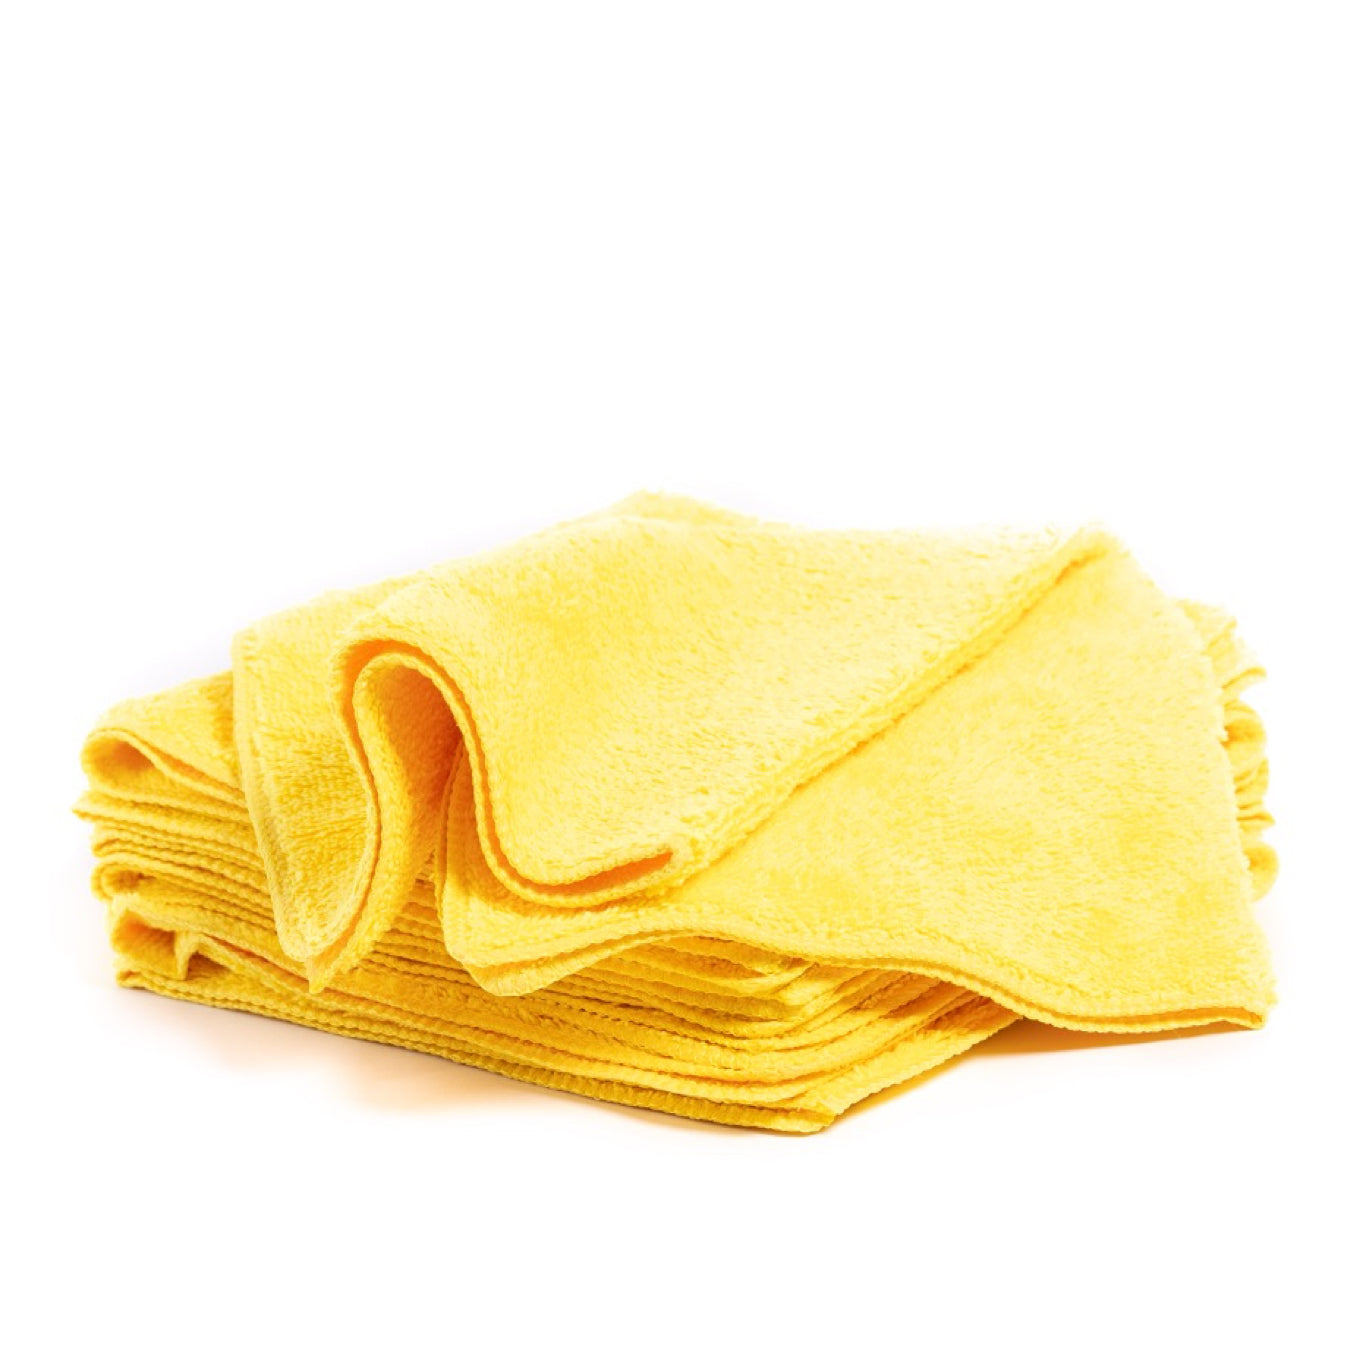 Fibreking premium car detailing Microfibre Towels Yellow